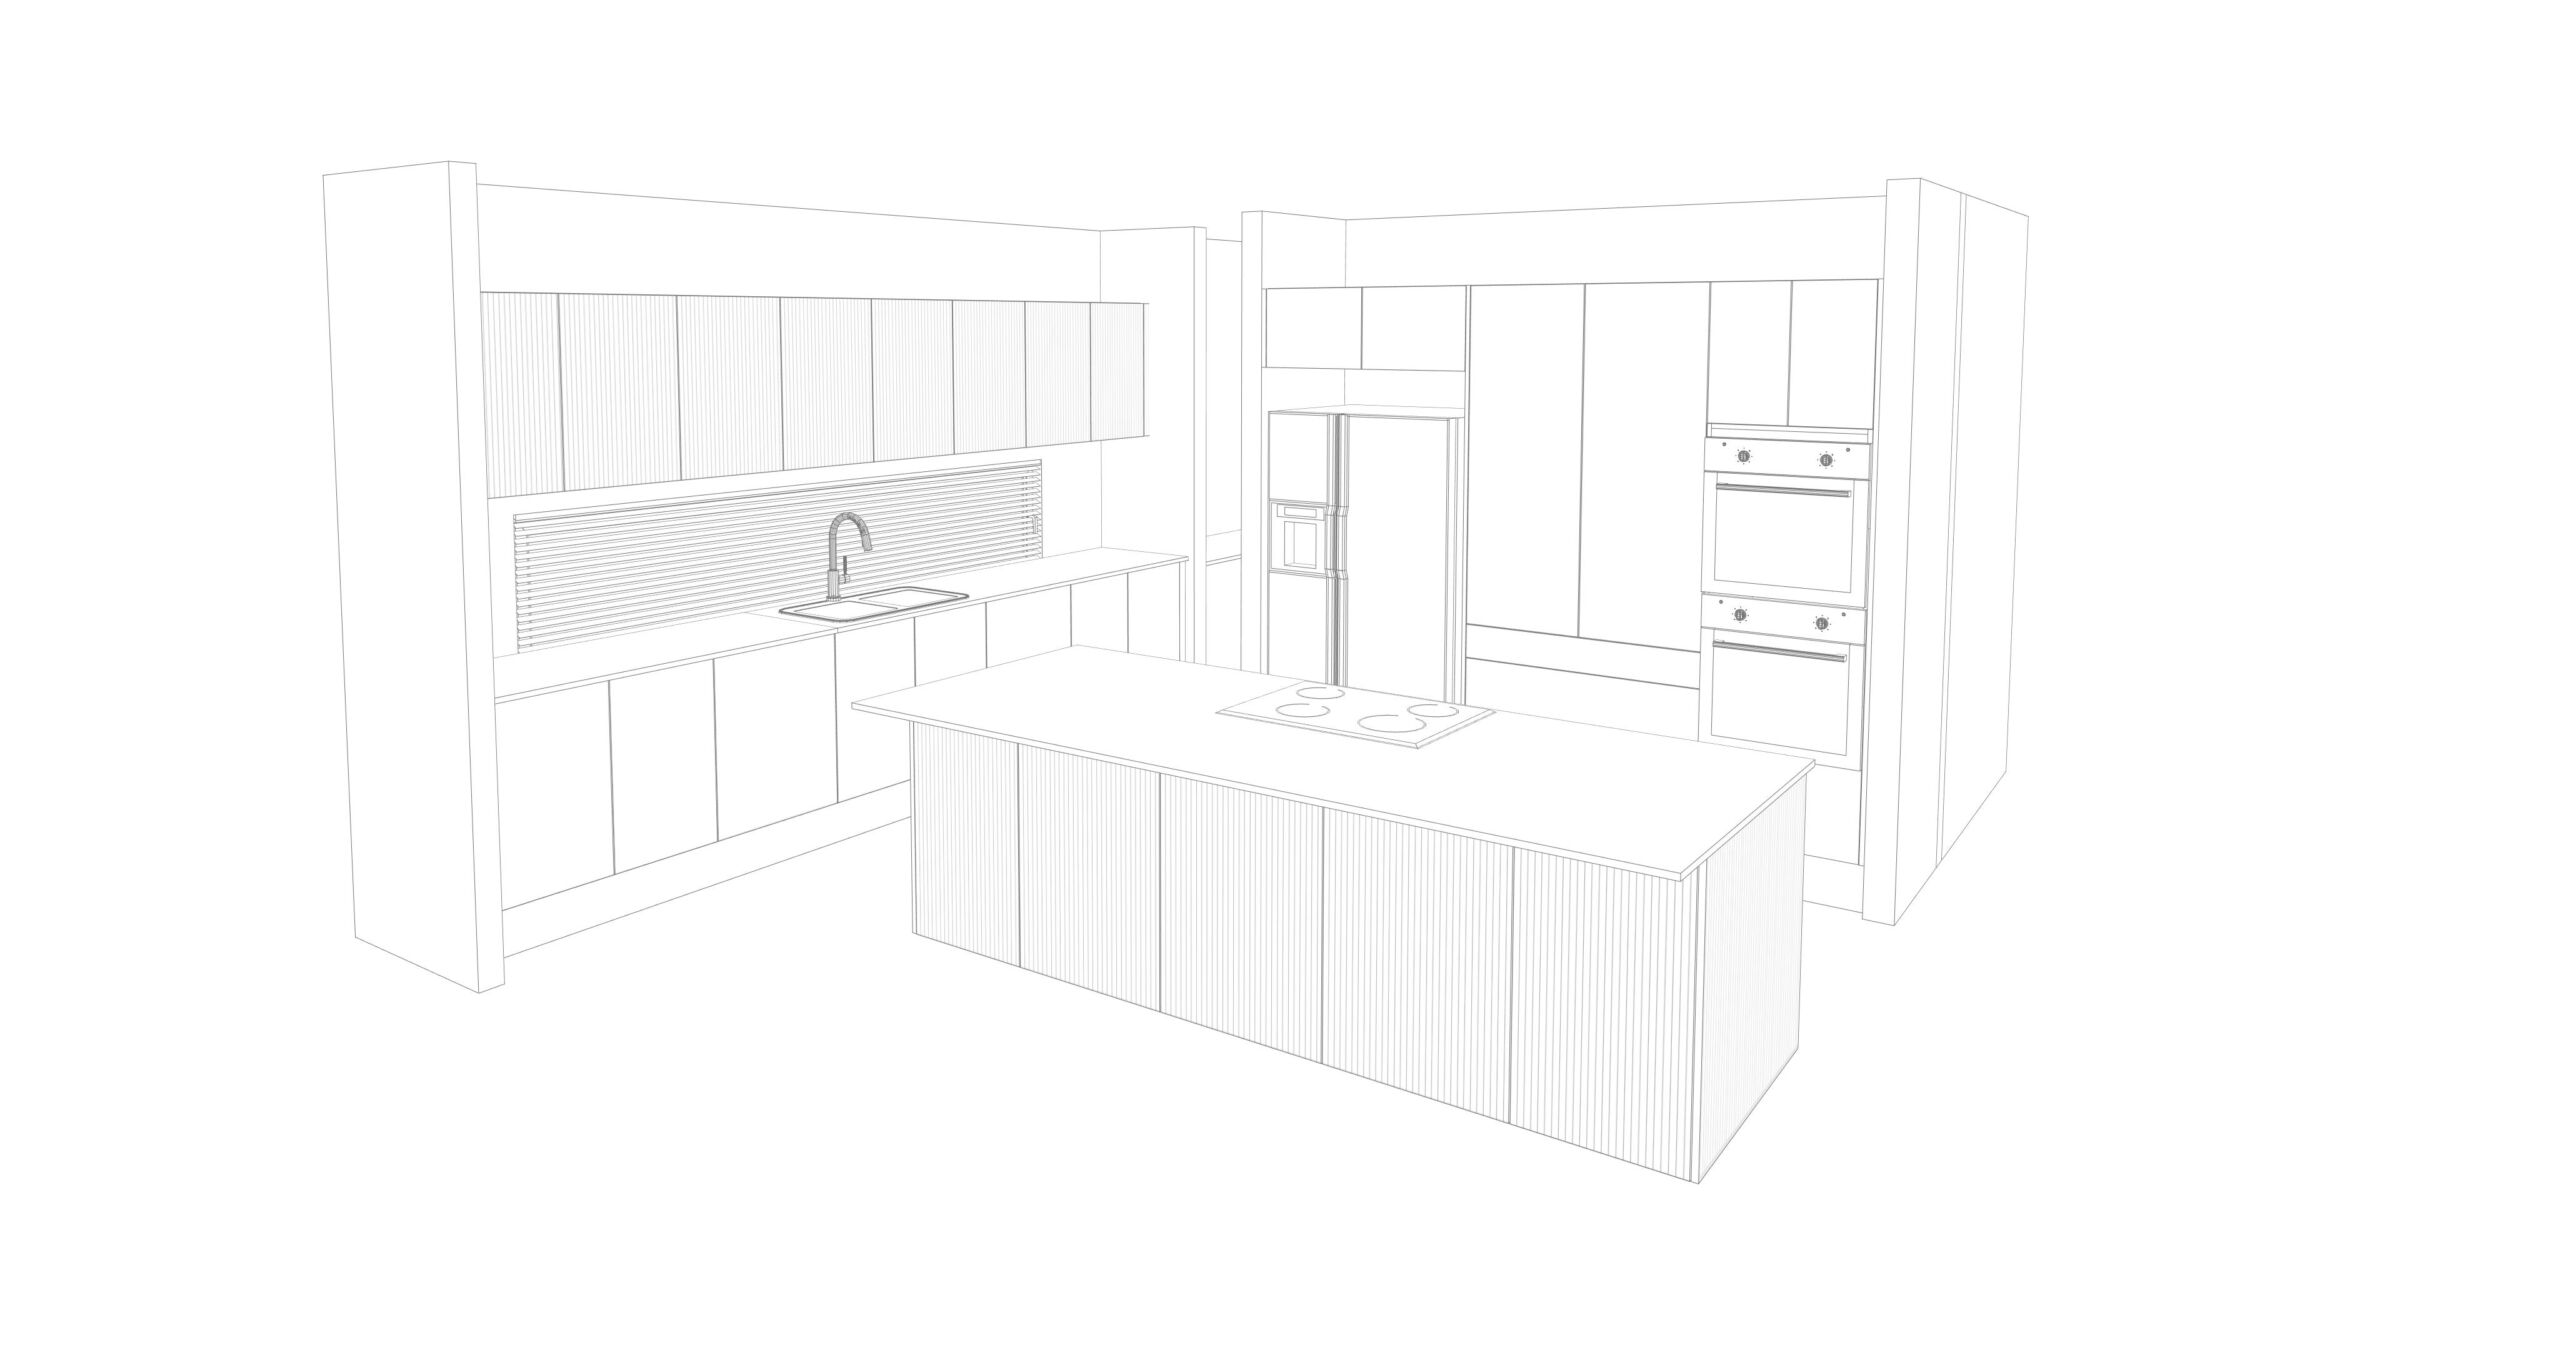 Kitchen layout of kitchen design 